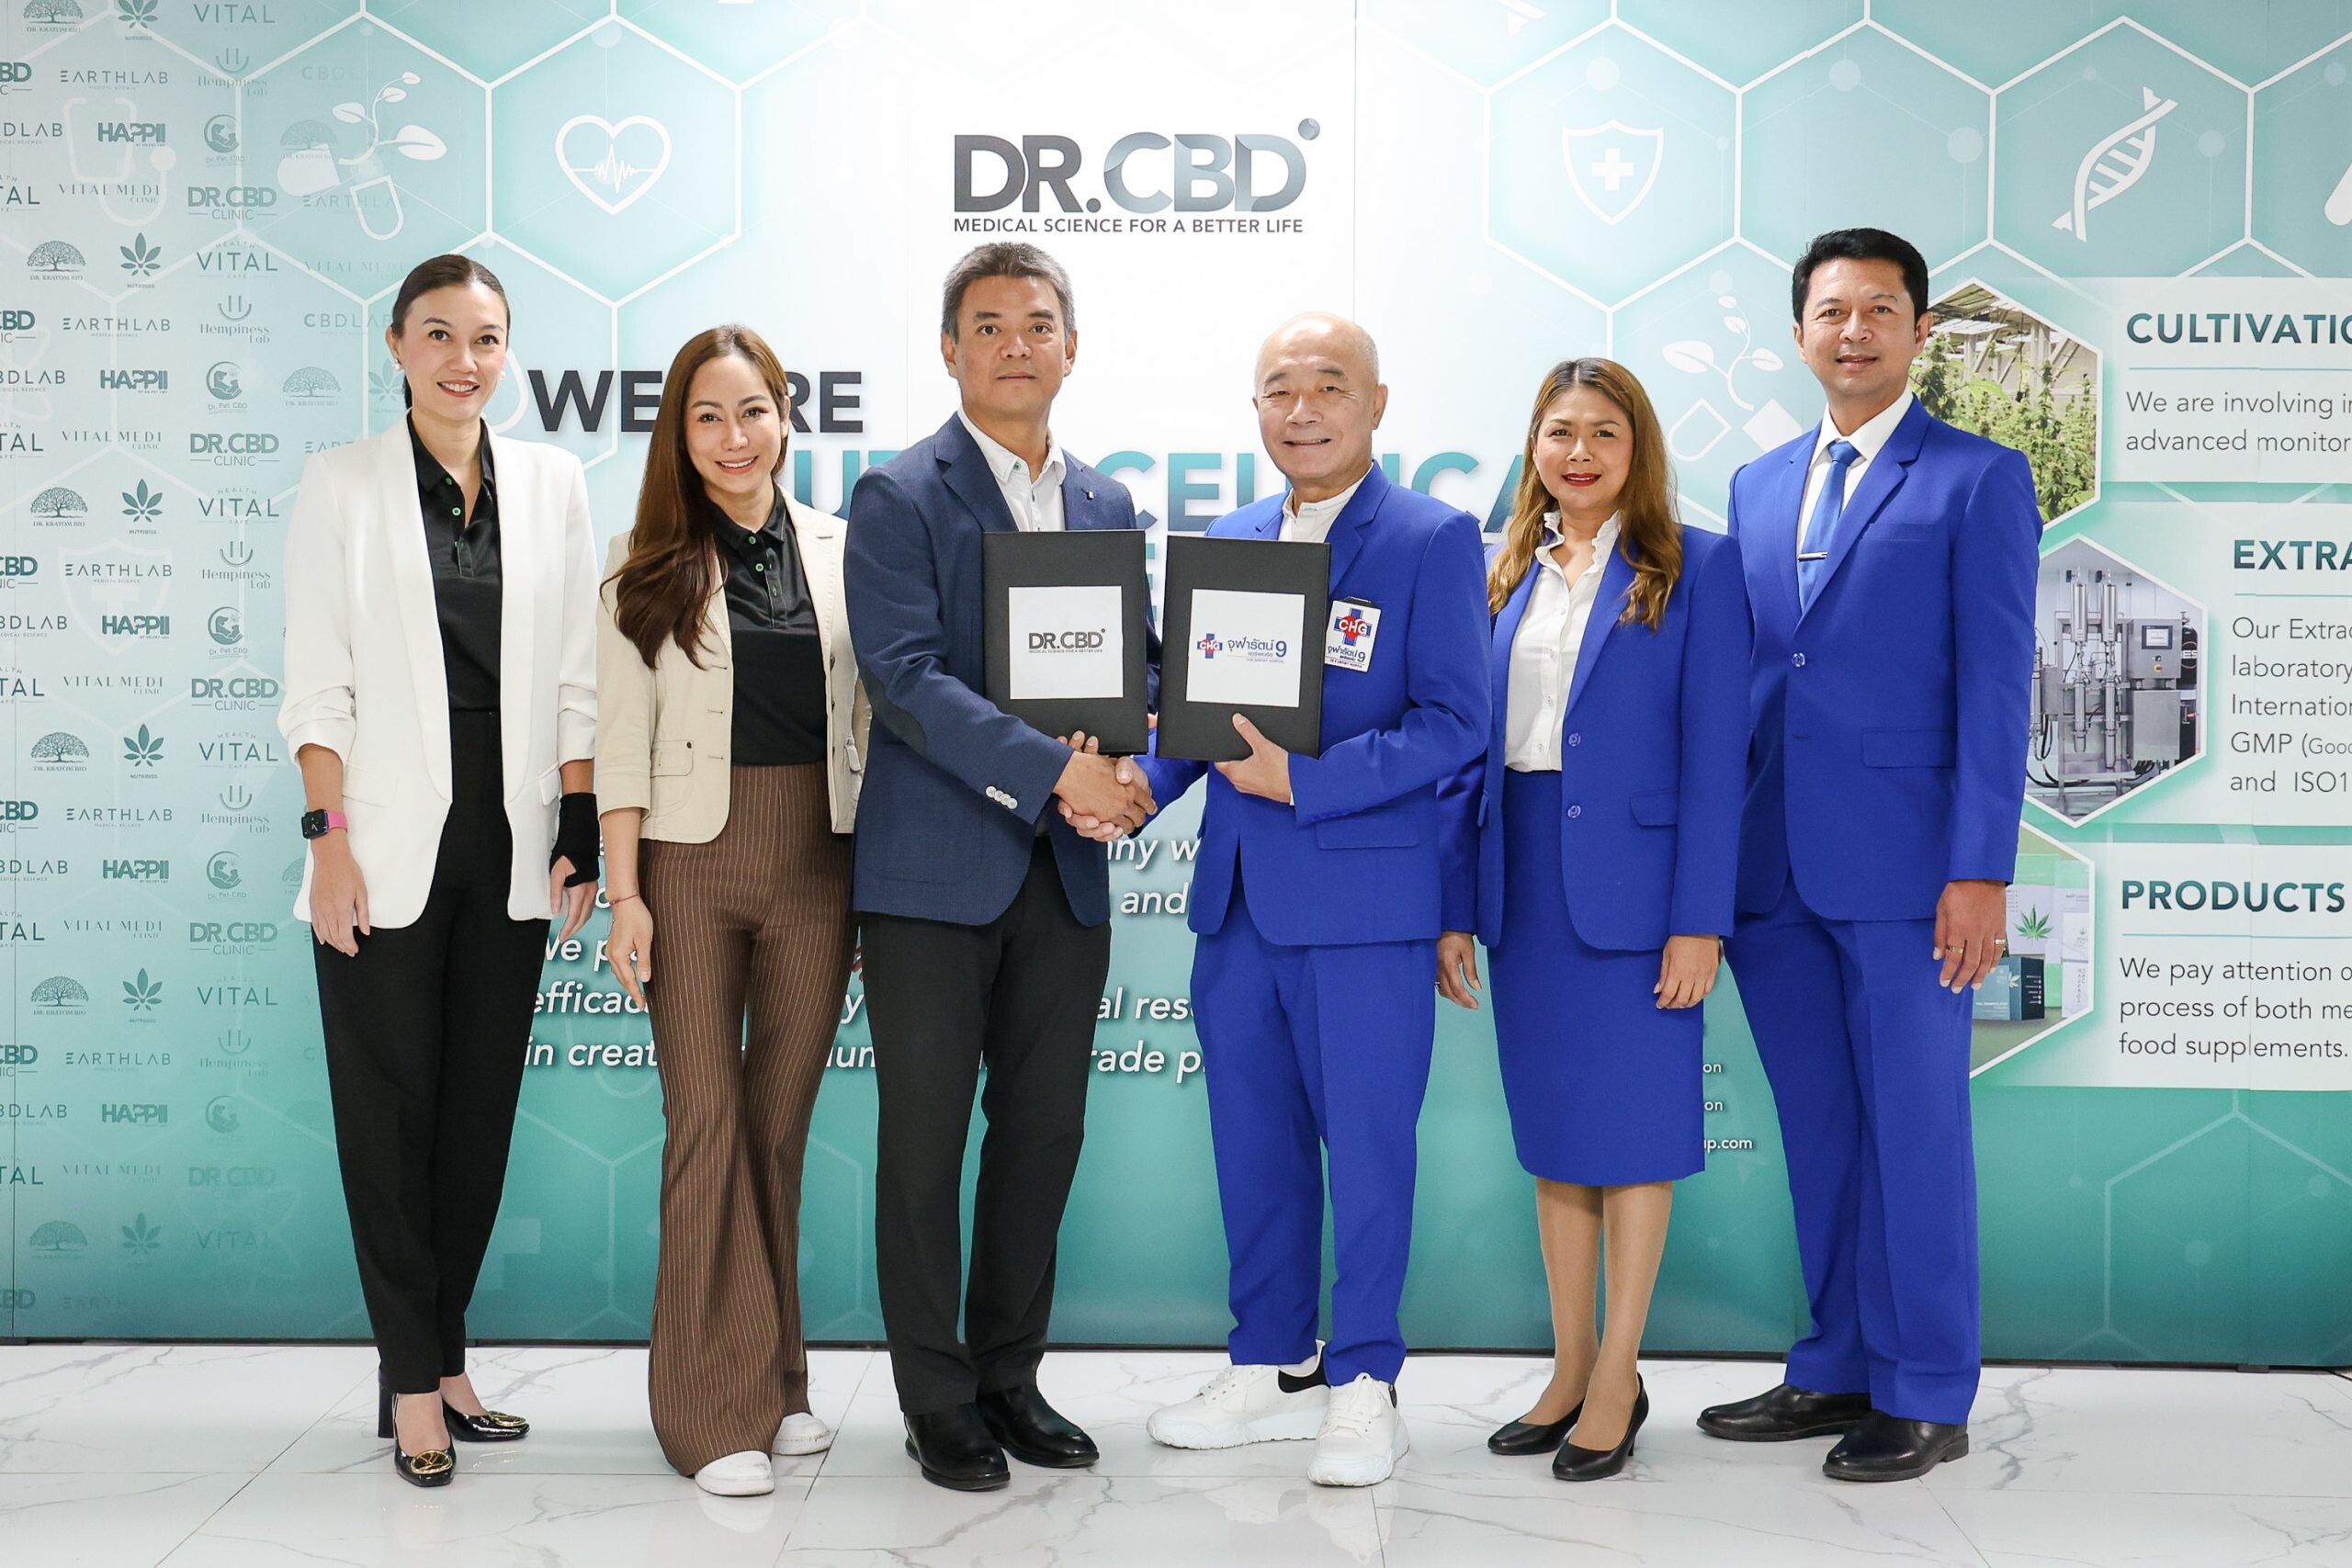 ก้าวสำคัญของวงการแพทย์และสมุนไพรไทย ดร.ซีบีดี (Dr.CBD) จับมือ โรงพยาบาลจุฬารัตน์ 9 แอร์พอร์ต ร่วมมือด้านงานวิจัยนวัตกรรม ผลิตภัณฑ์ทางด้านกัญชง กัญชาและกระท่อม